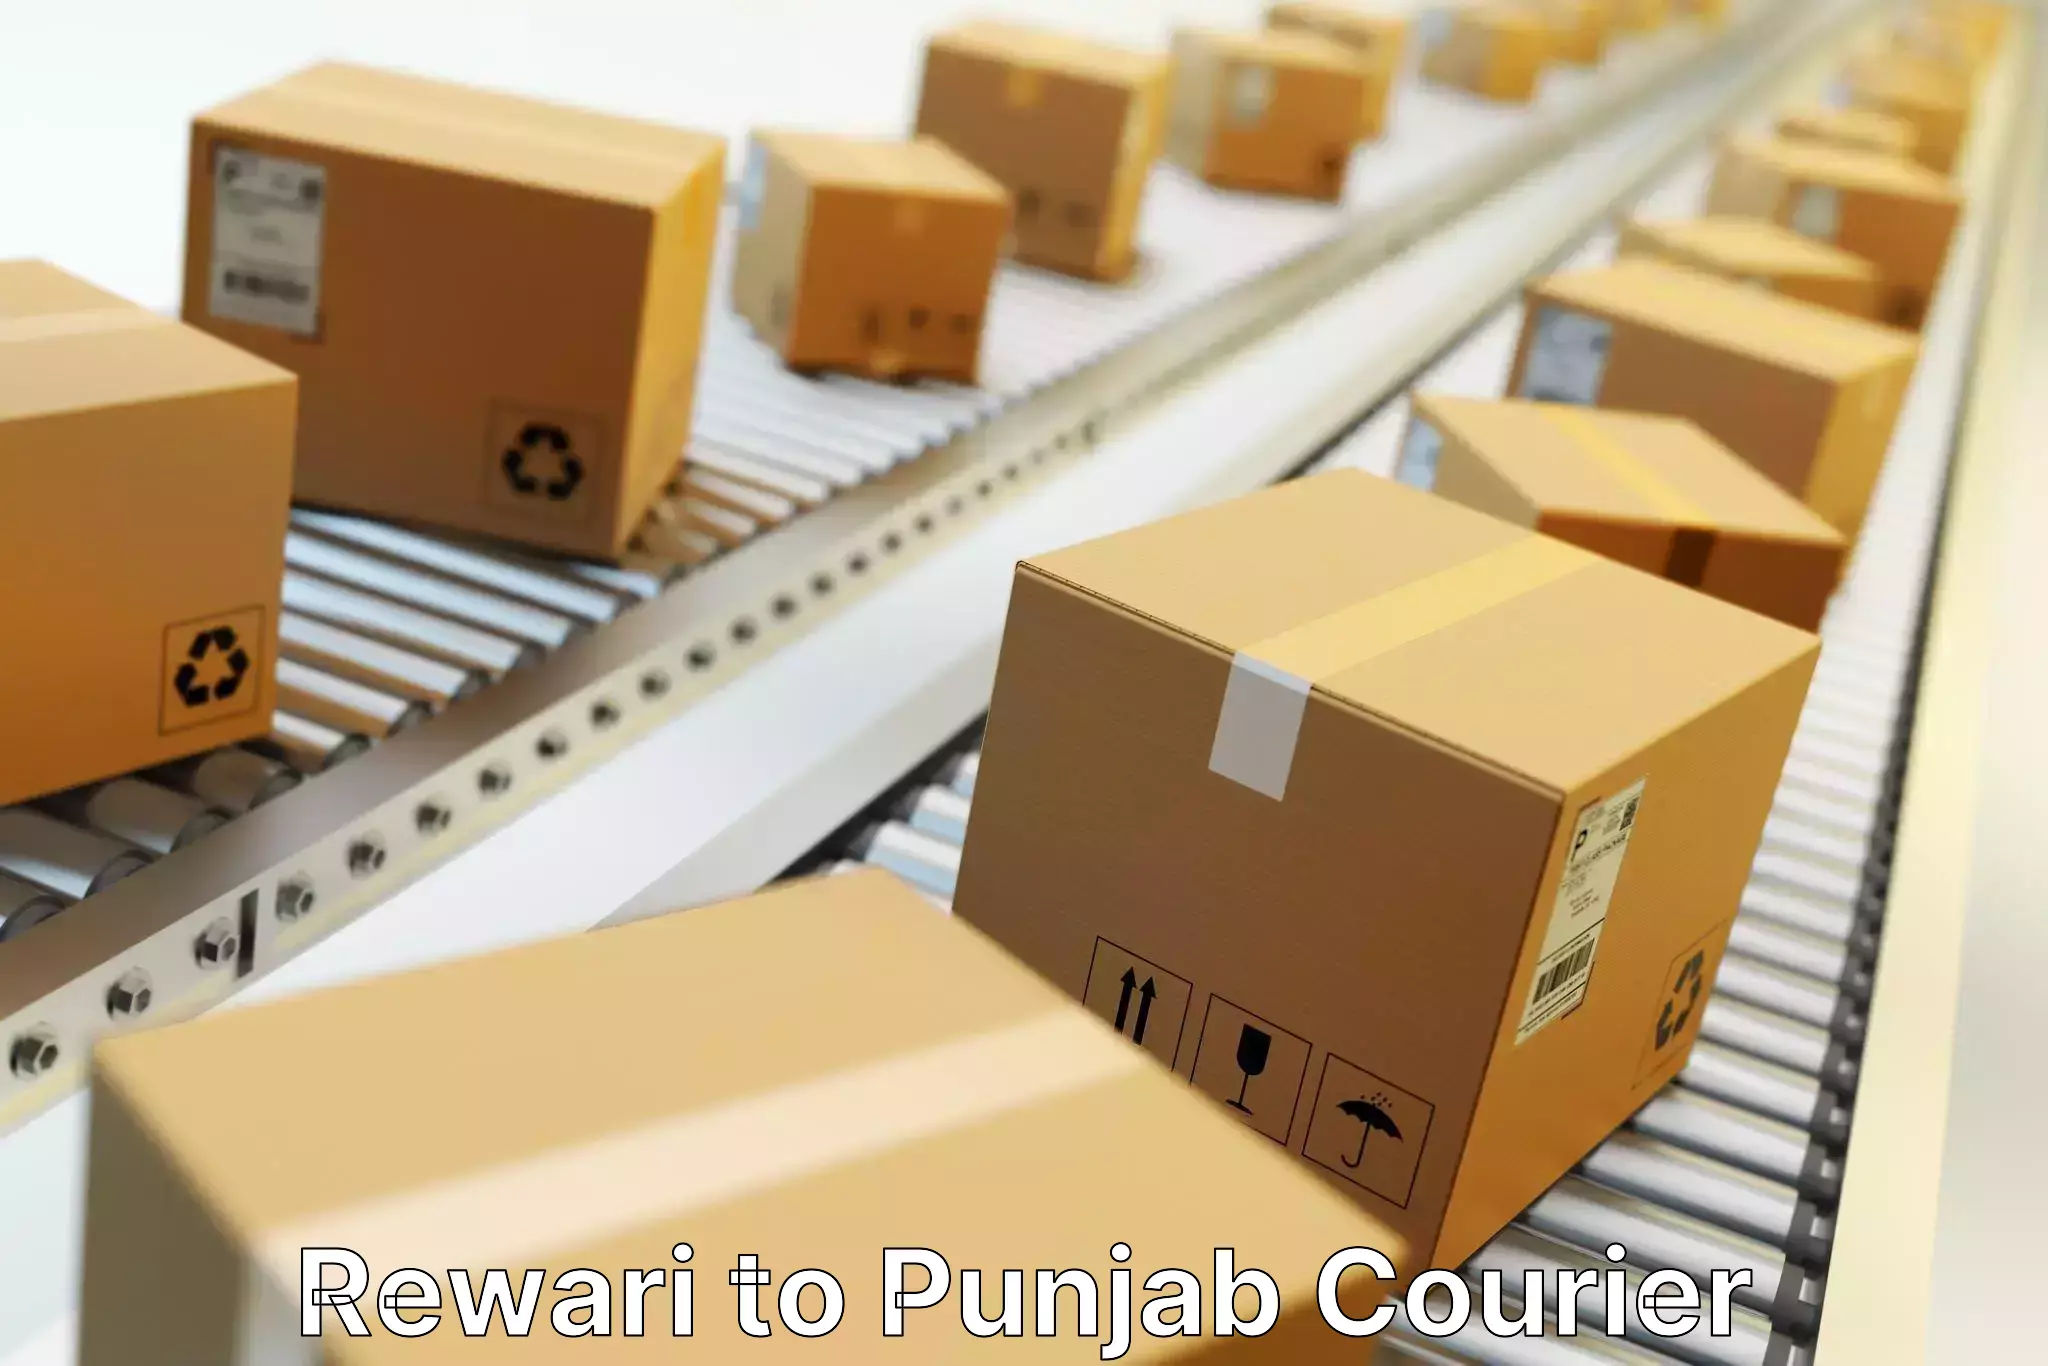 User-friendly courier app Rewari to Punjab